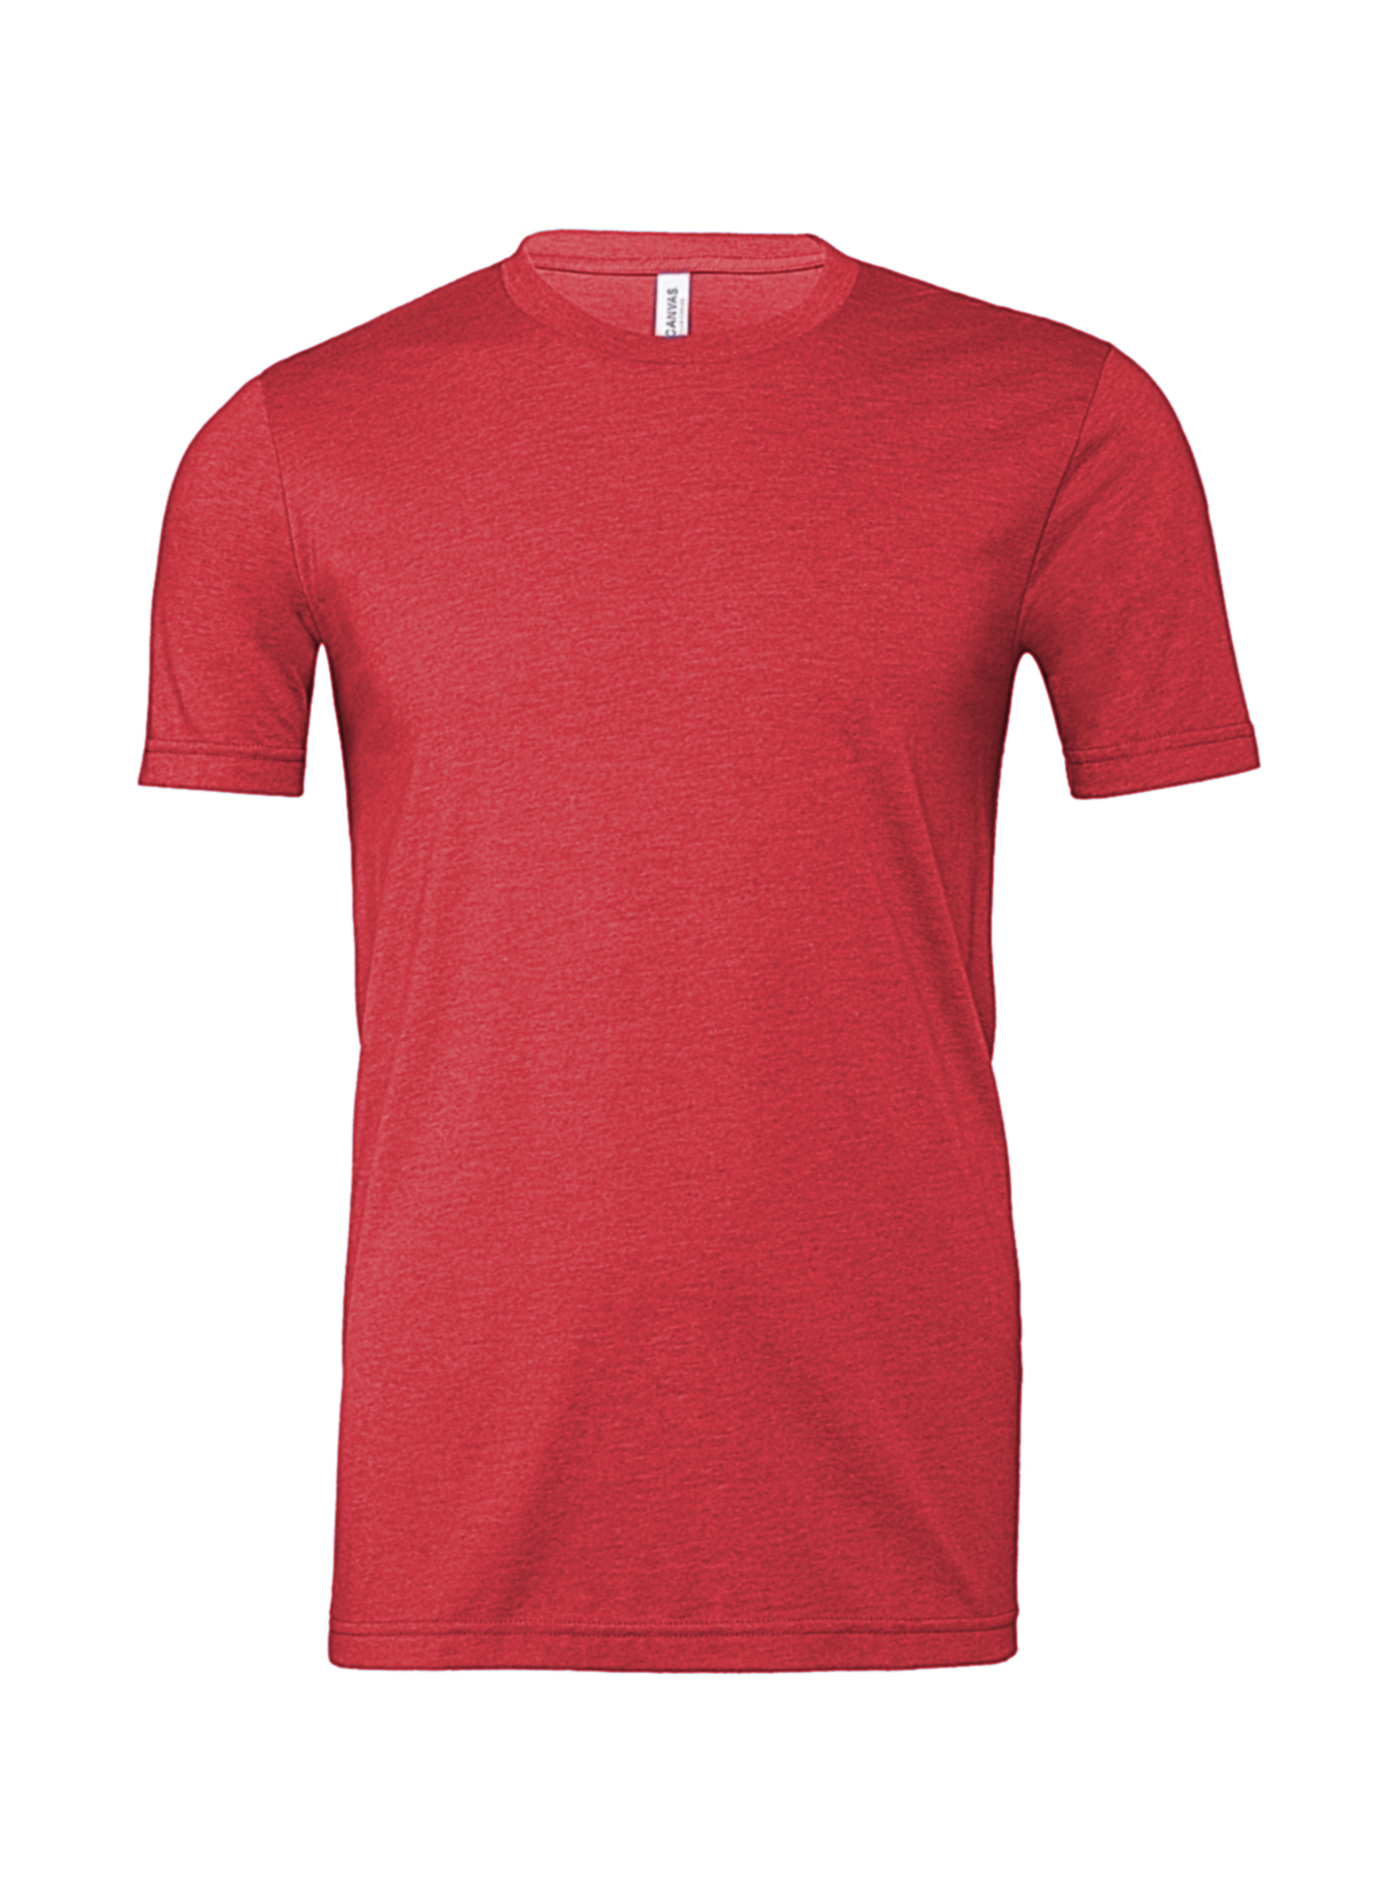 Pánské tričko Bella + Canvas Jersey Heather - Červená L